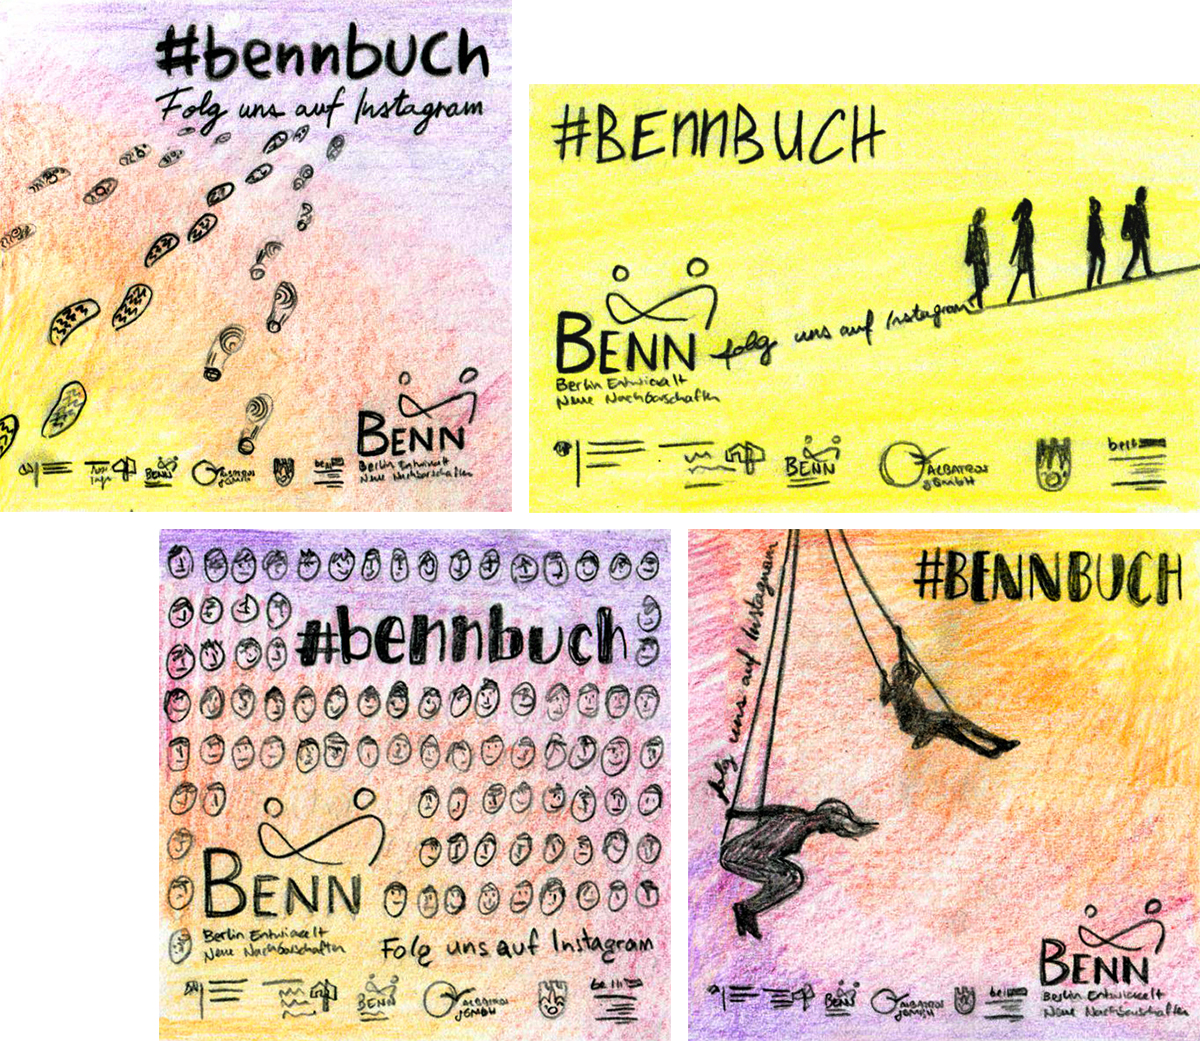 Skizzen für einen Aufkleber für das Berliner Programm "BENN"